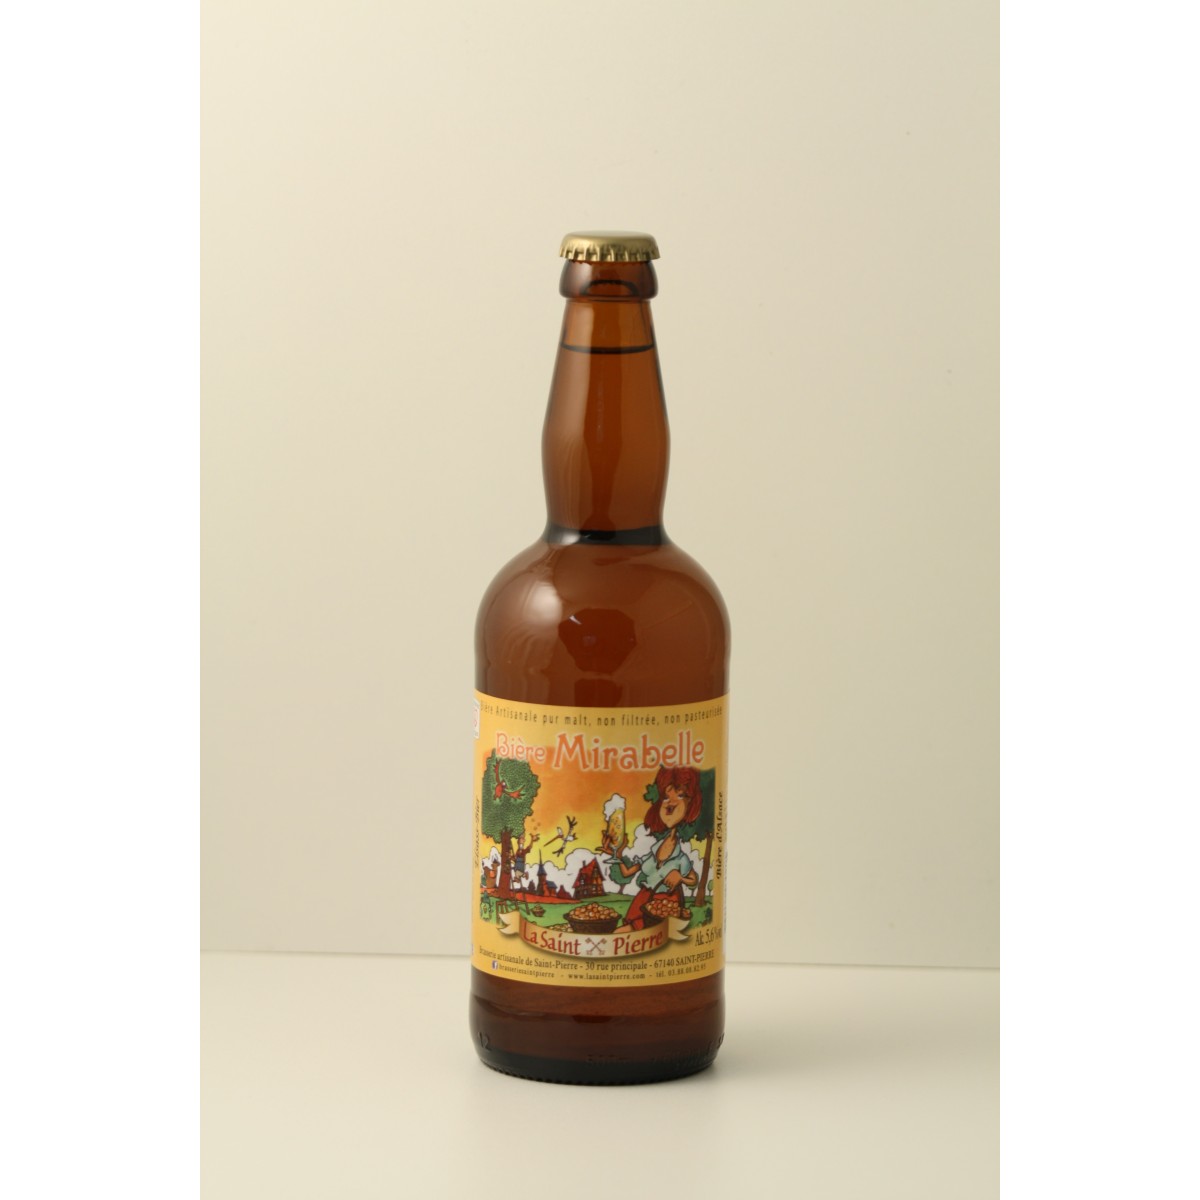 Bière artisanale Sirop De Violette - 25 Cl